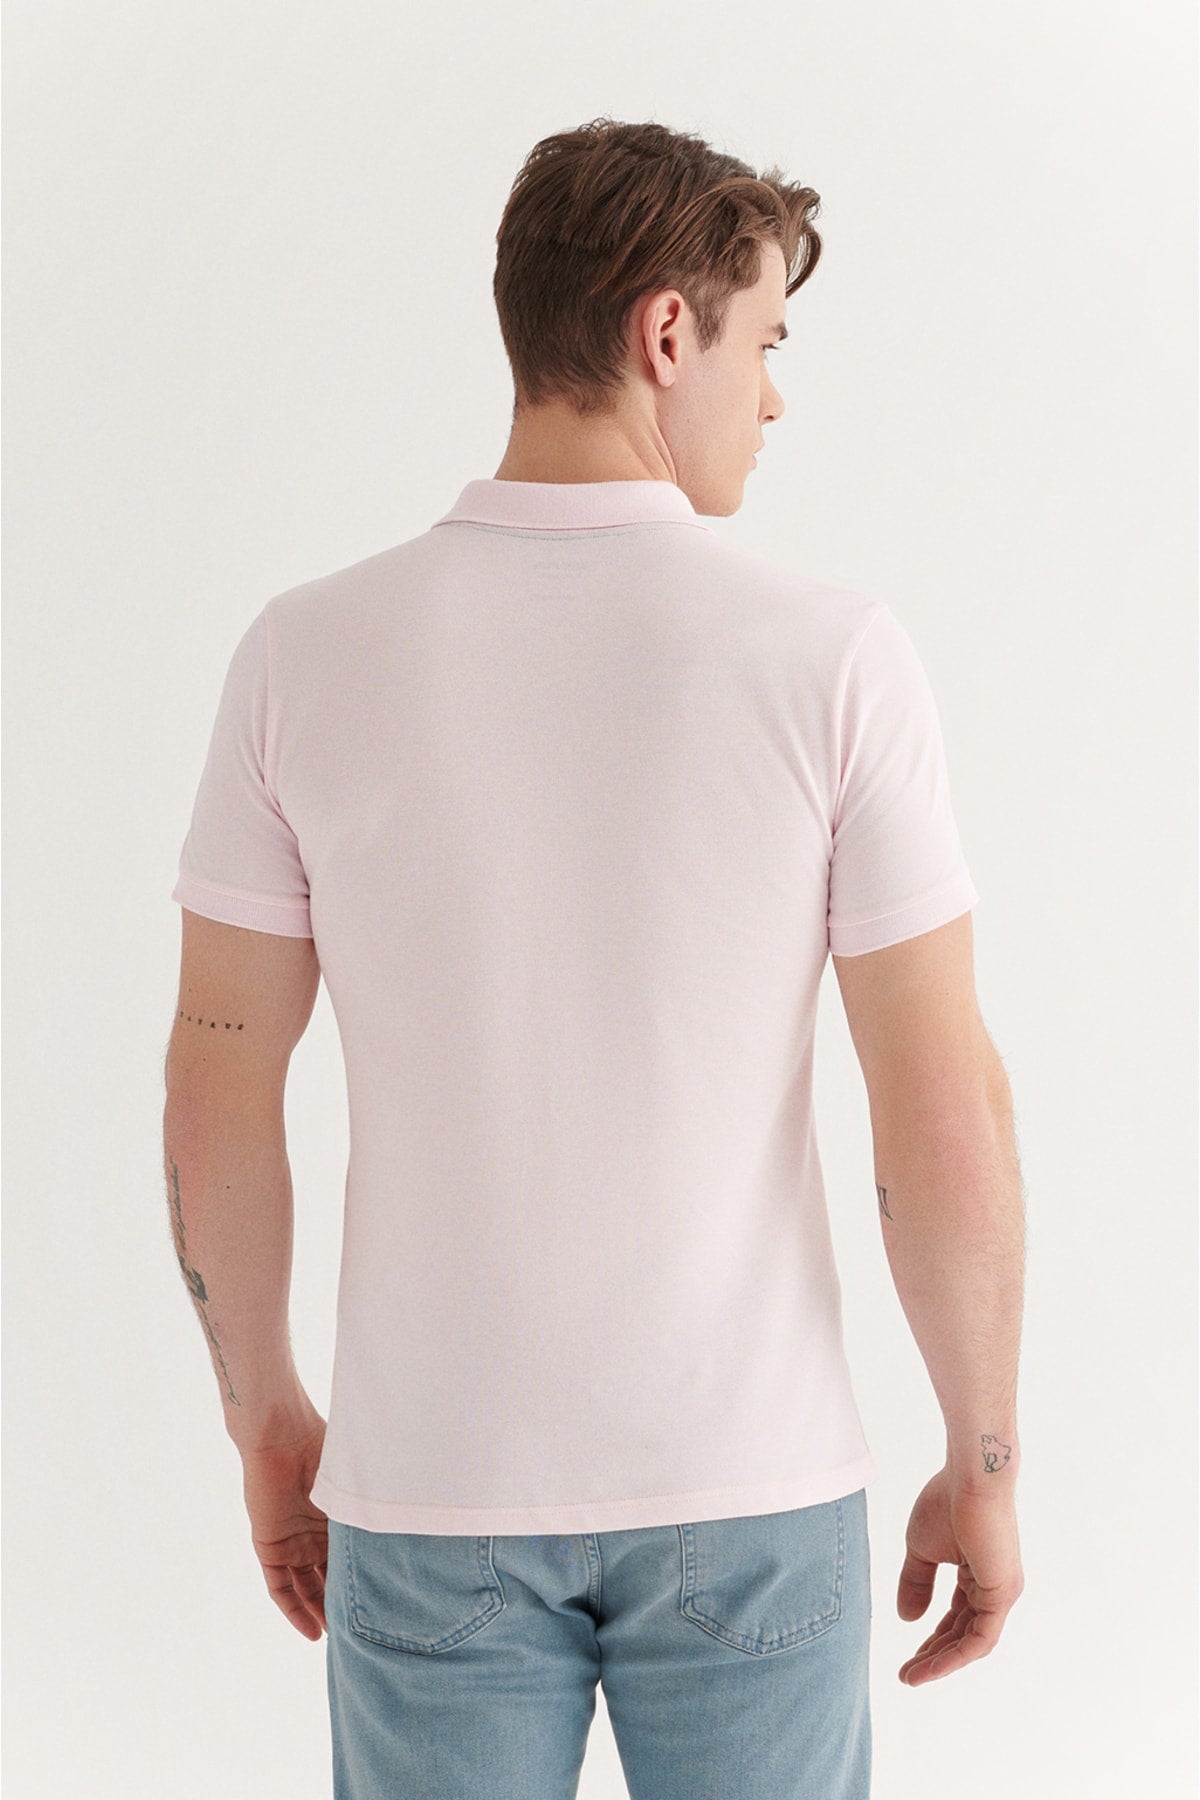  Мужская светло-розовая дышащая футболка из 100 % хлопка стандартного кроя с воротником-поло стандартного кроя E001004